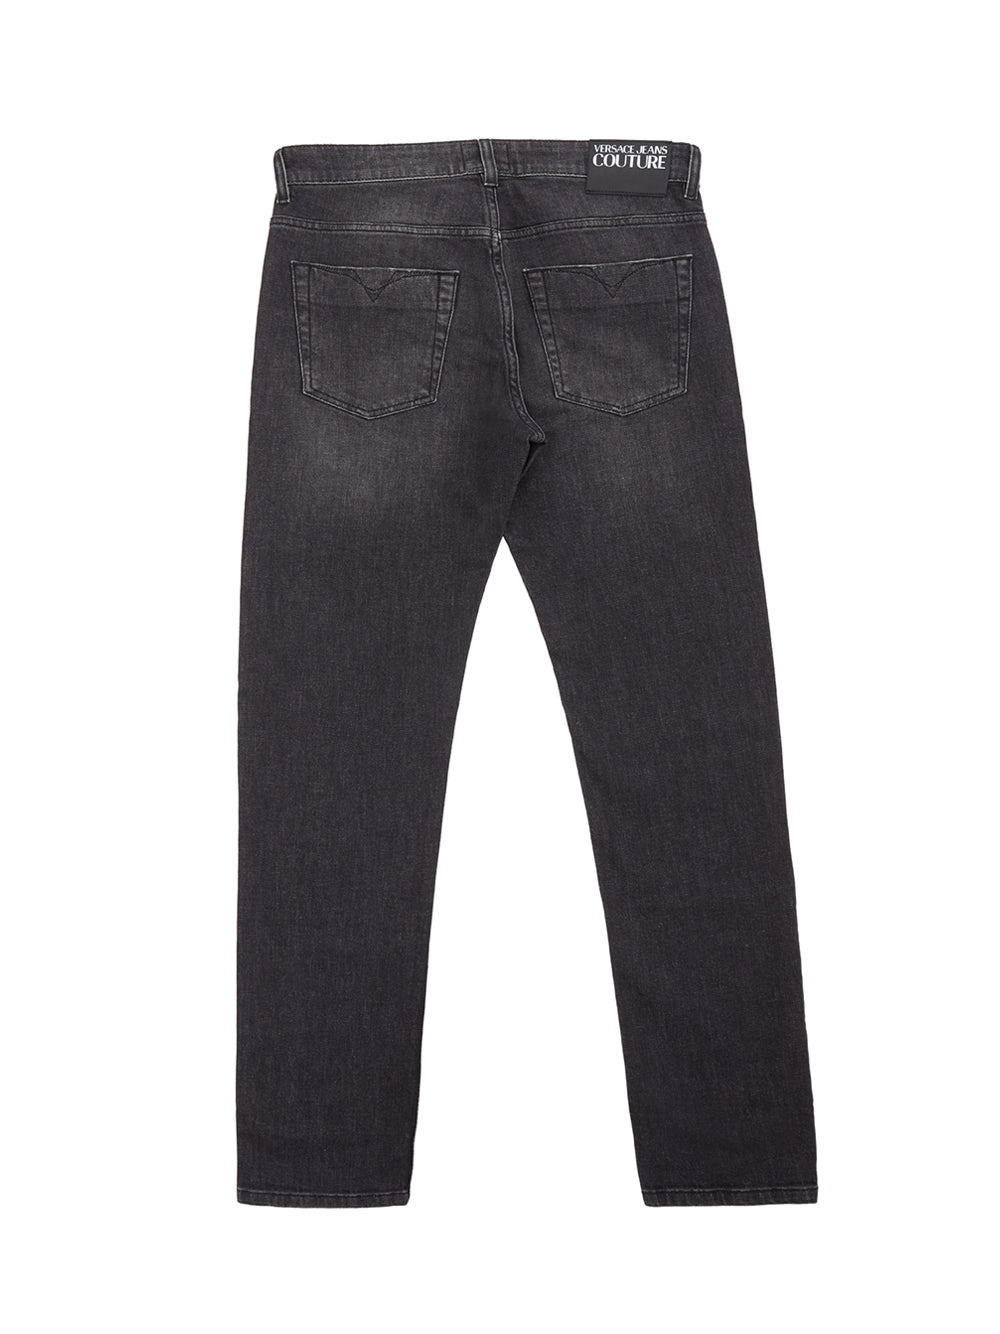 Versace Jeans Black Washed Slim Fit Jeans - DEA STILOSA MILANO